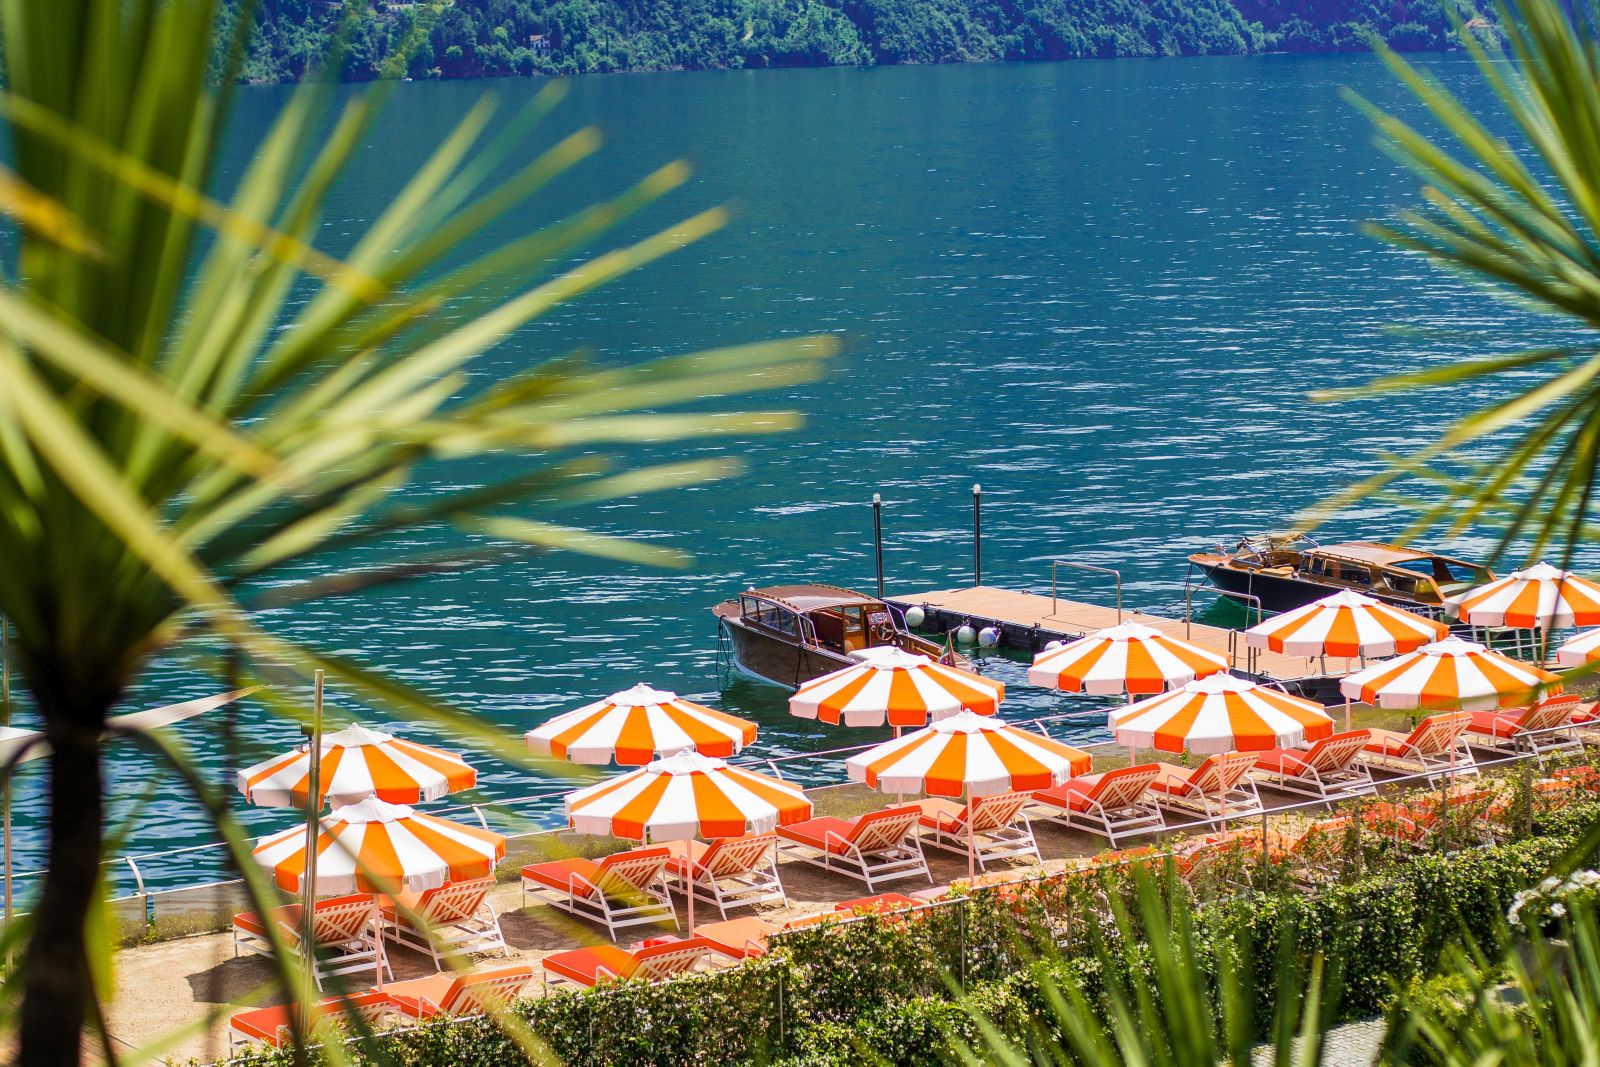 The beach club at Grand Hotel Tremezzo Lake Como Italy